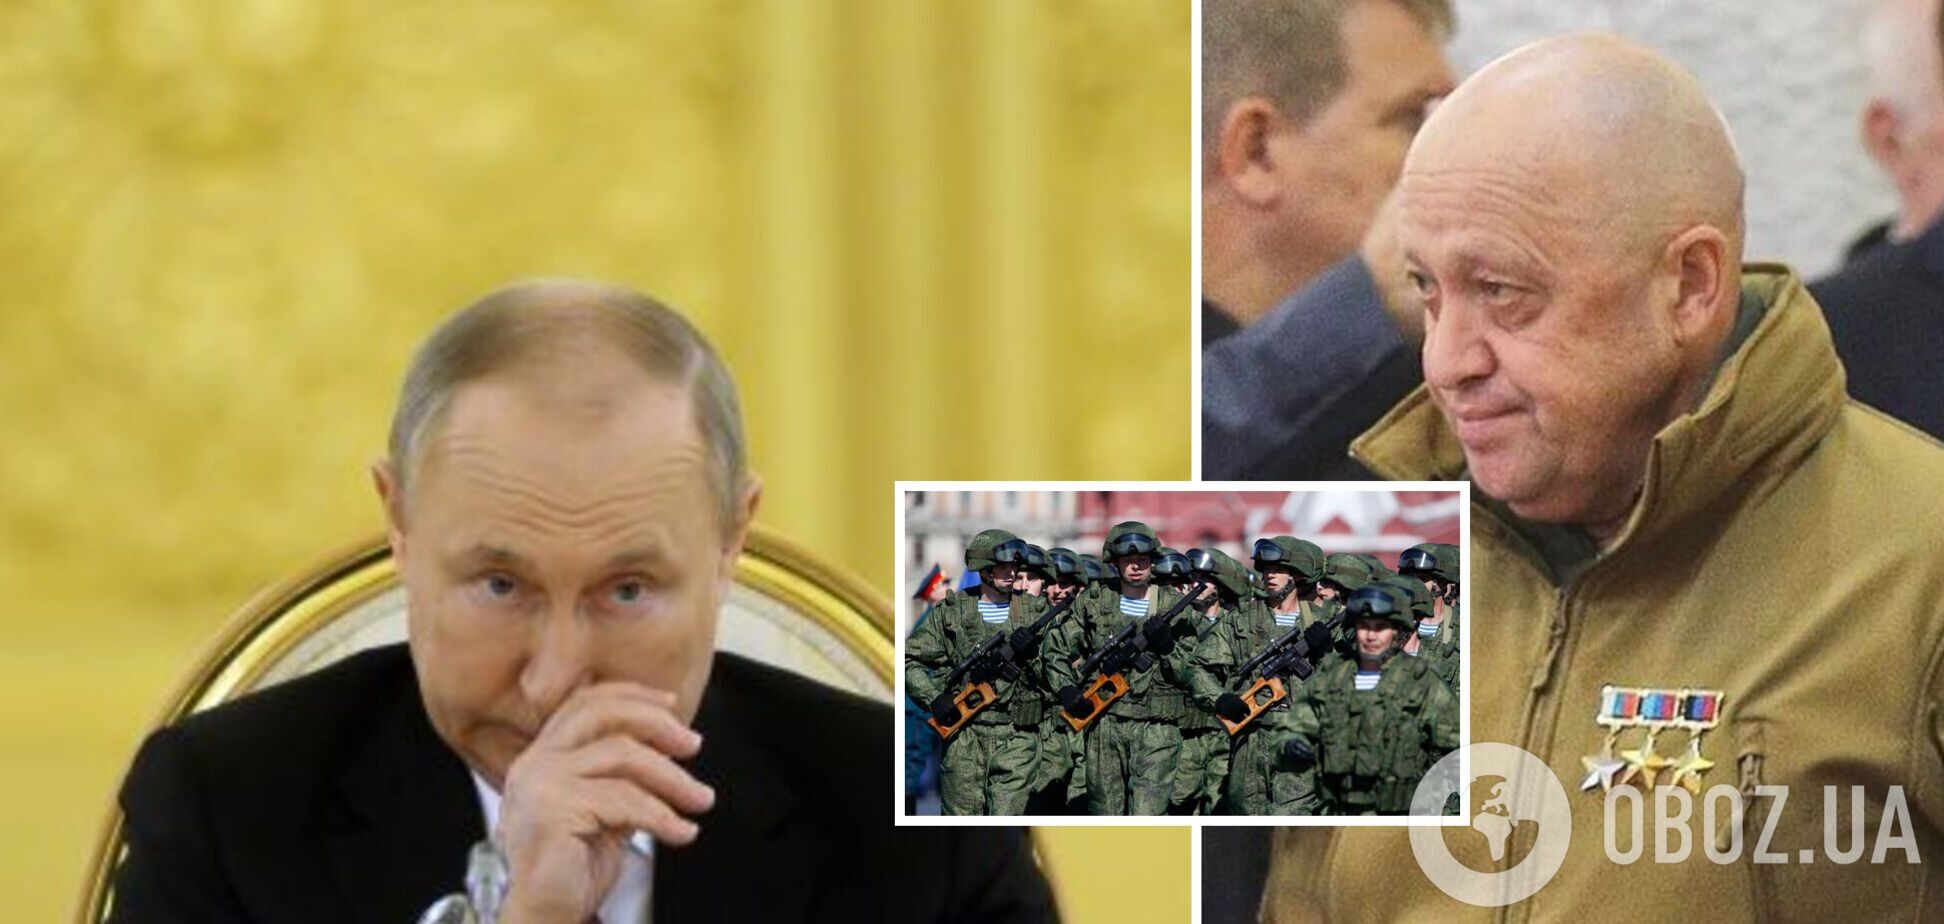 Российские силовики и народ собираются поддержать Пригожина, Путин готовится покинуть страну – источник в спецслужбах